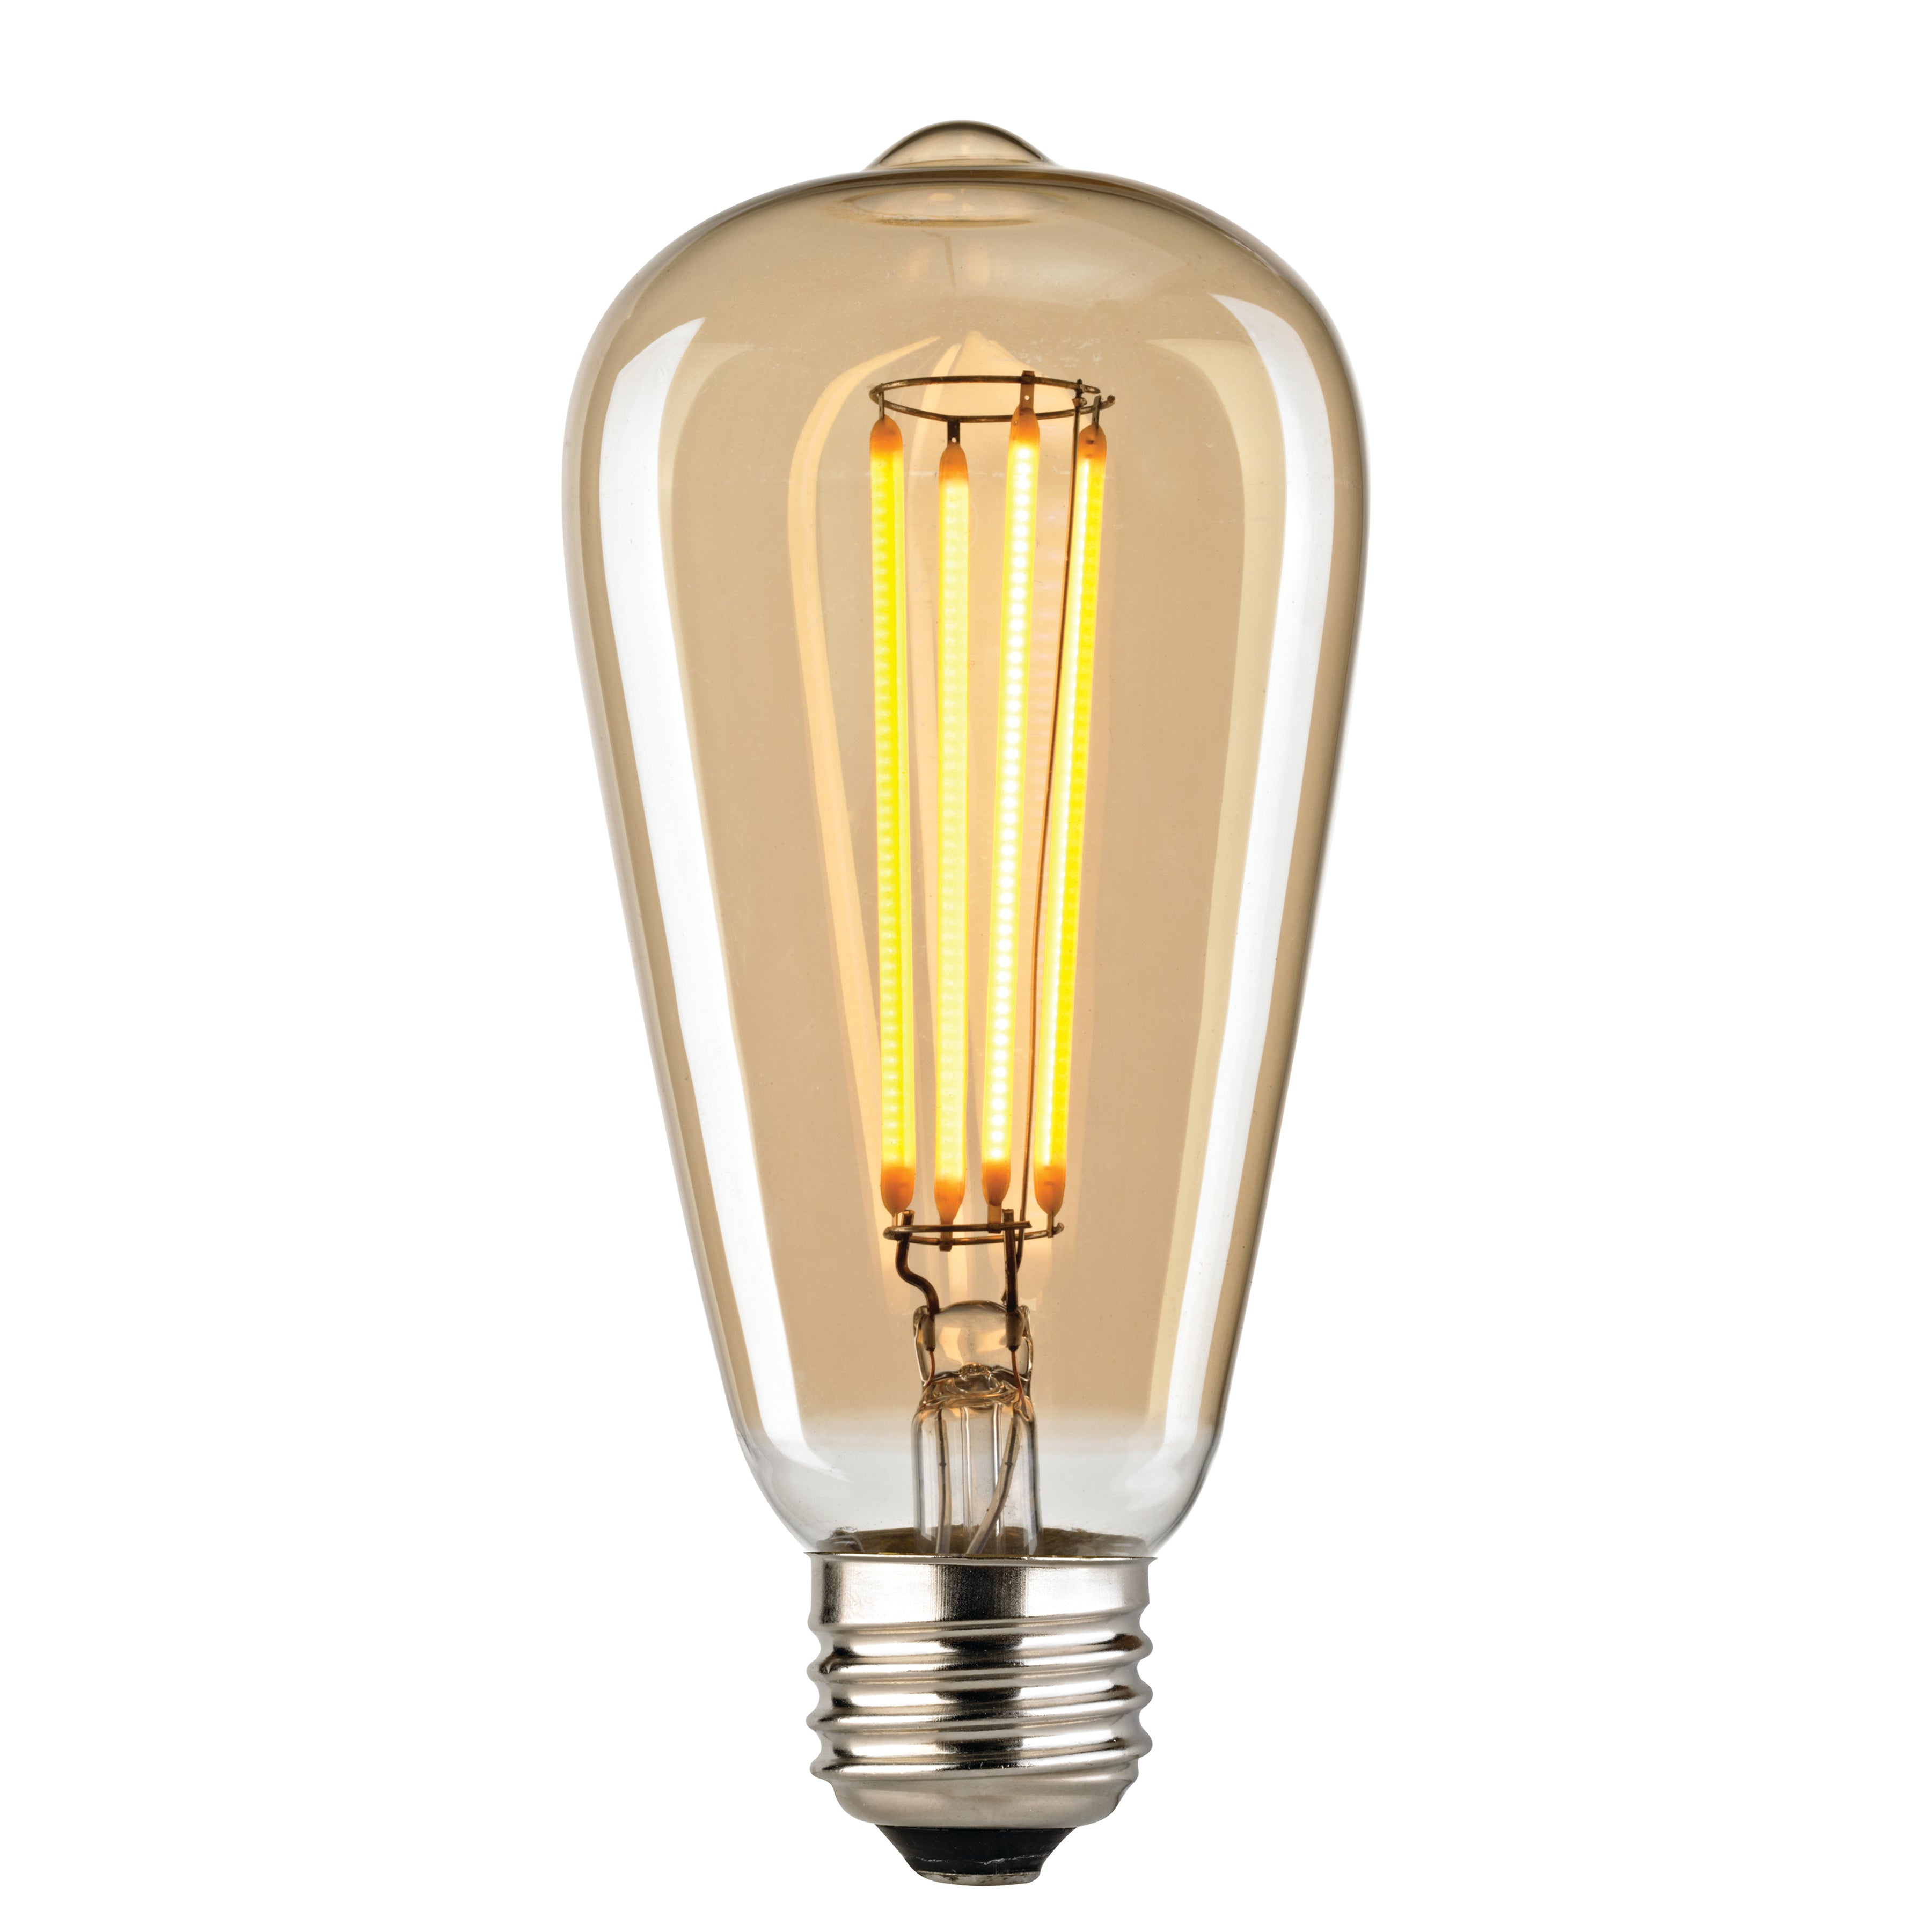 LED Medium Bulb - Shape T64, Base E26, 2700K - Light Gold Tint